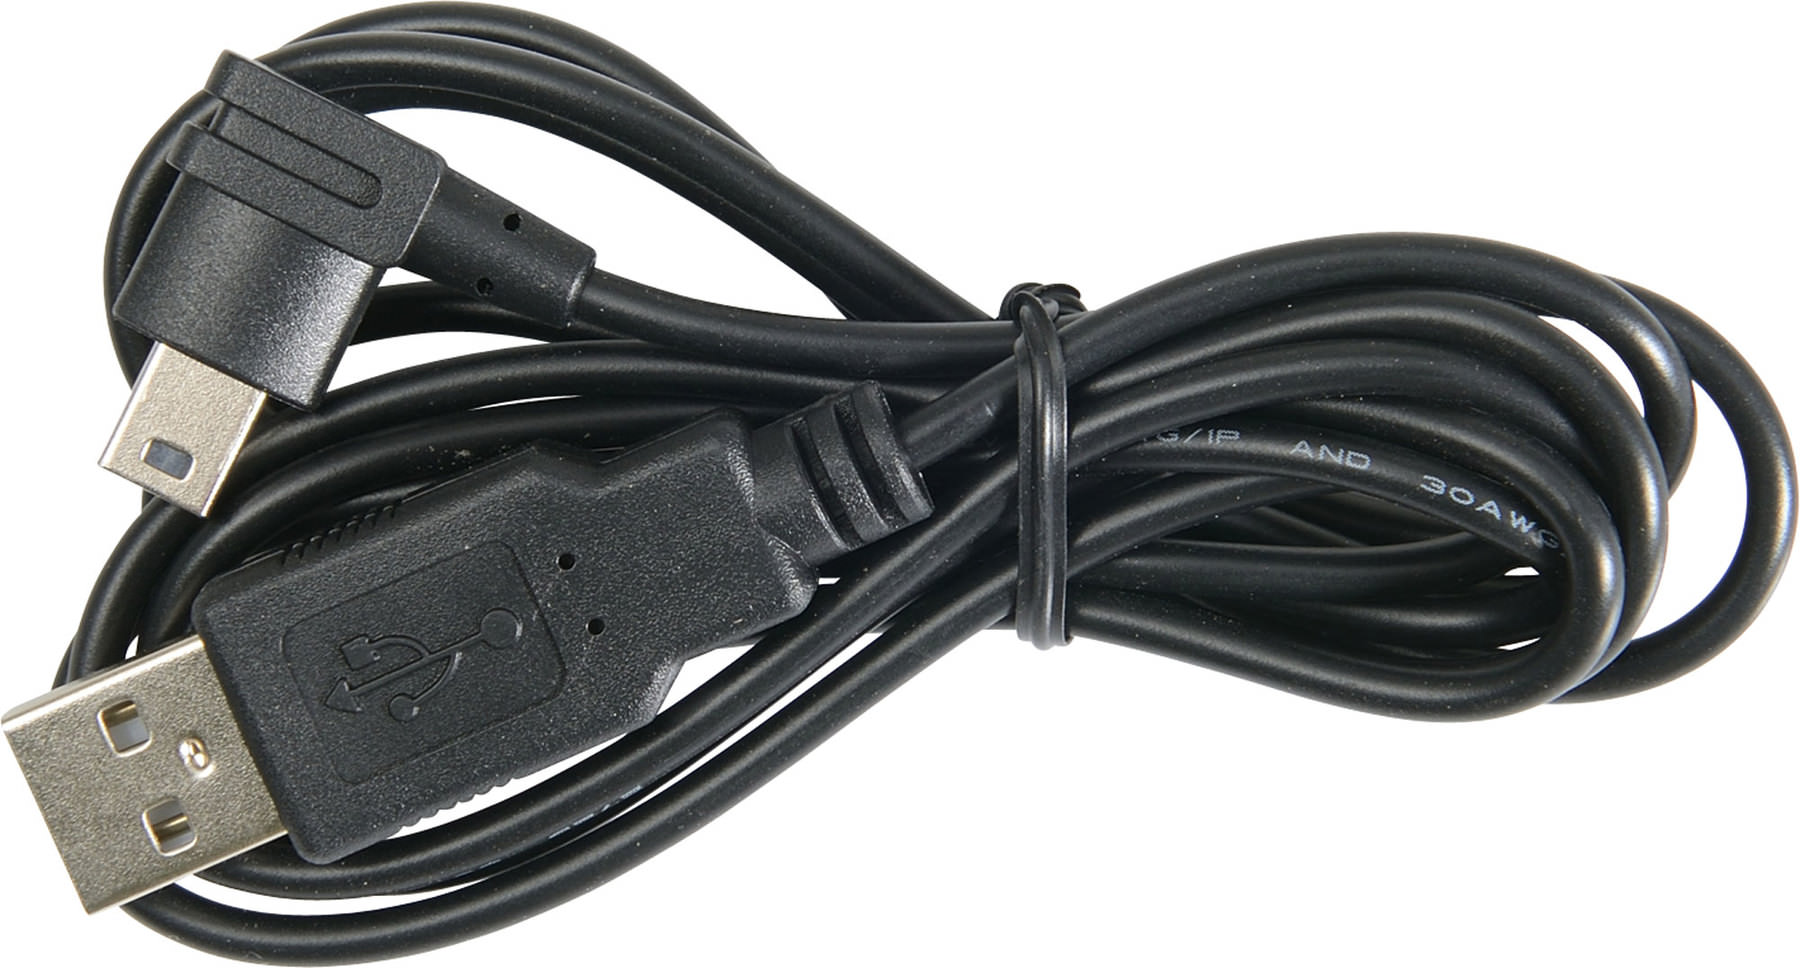 Alimentation USB + câble USB Pour Nolan N-Com Vente en Ligne 